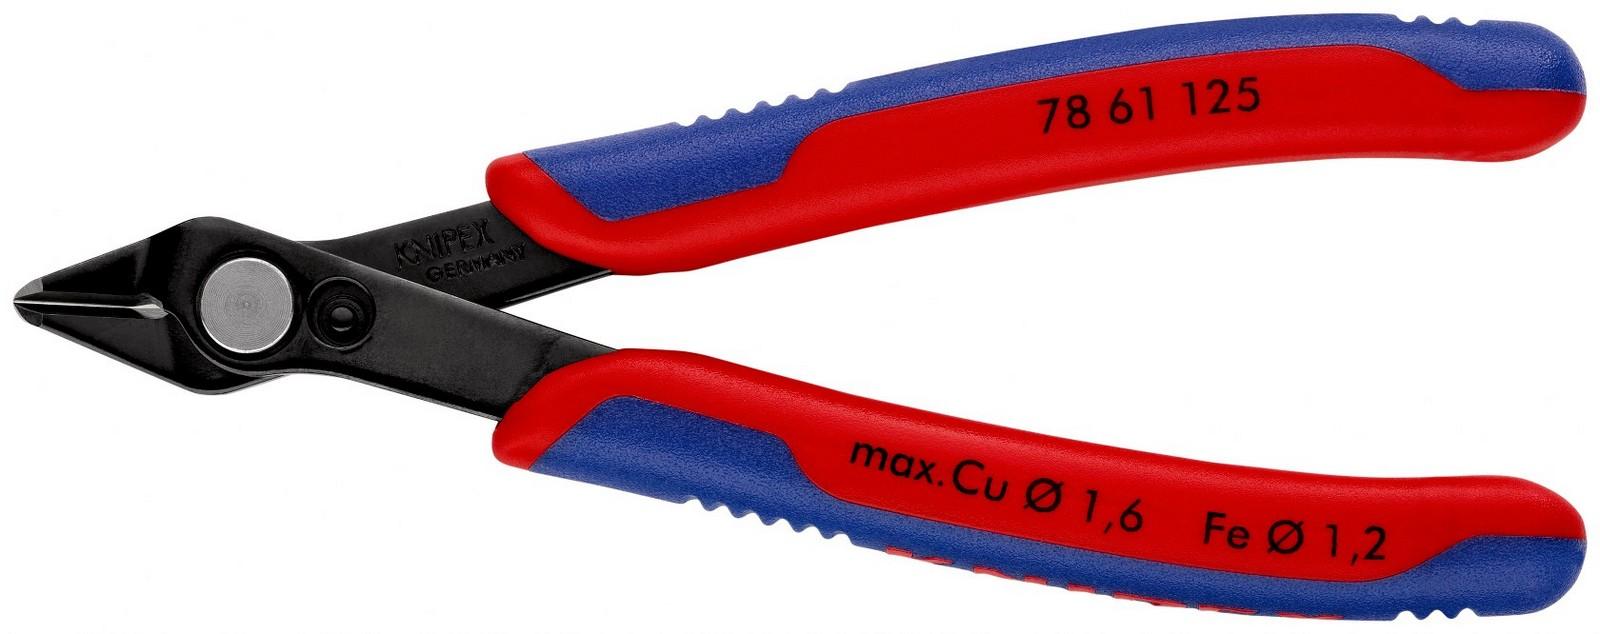 KNIPEX Klešta Super Knips elektroničarska 125mm 78 61 125 crvena